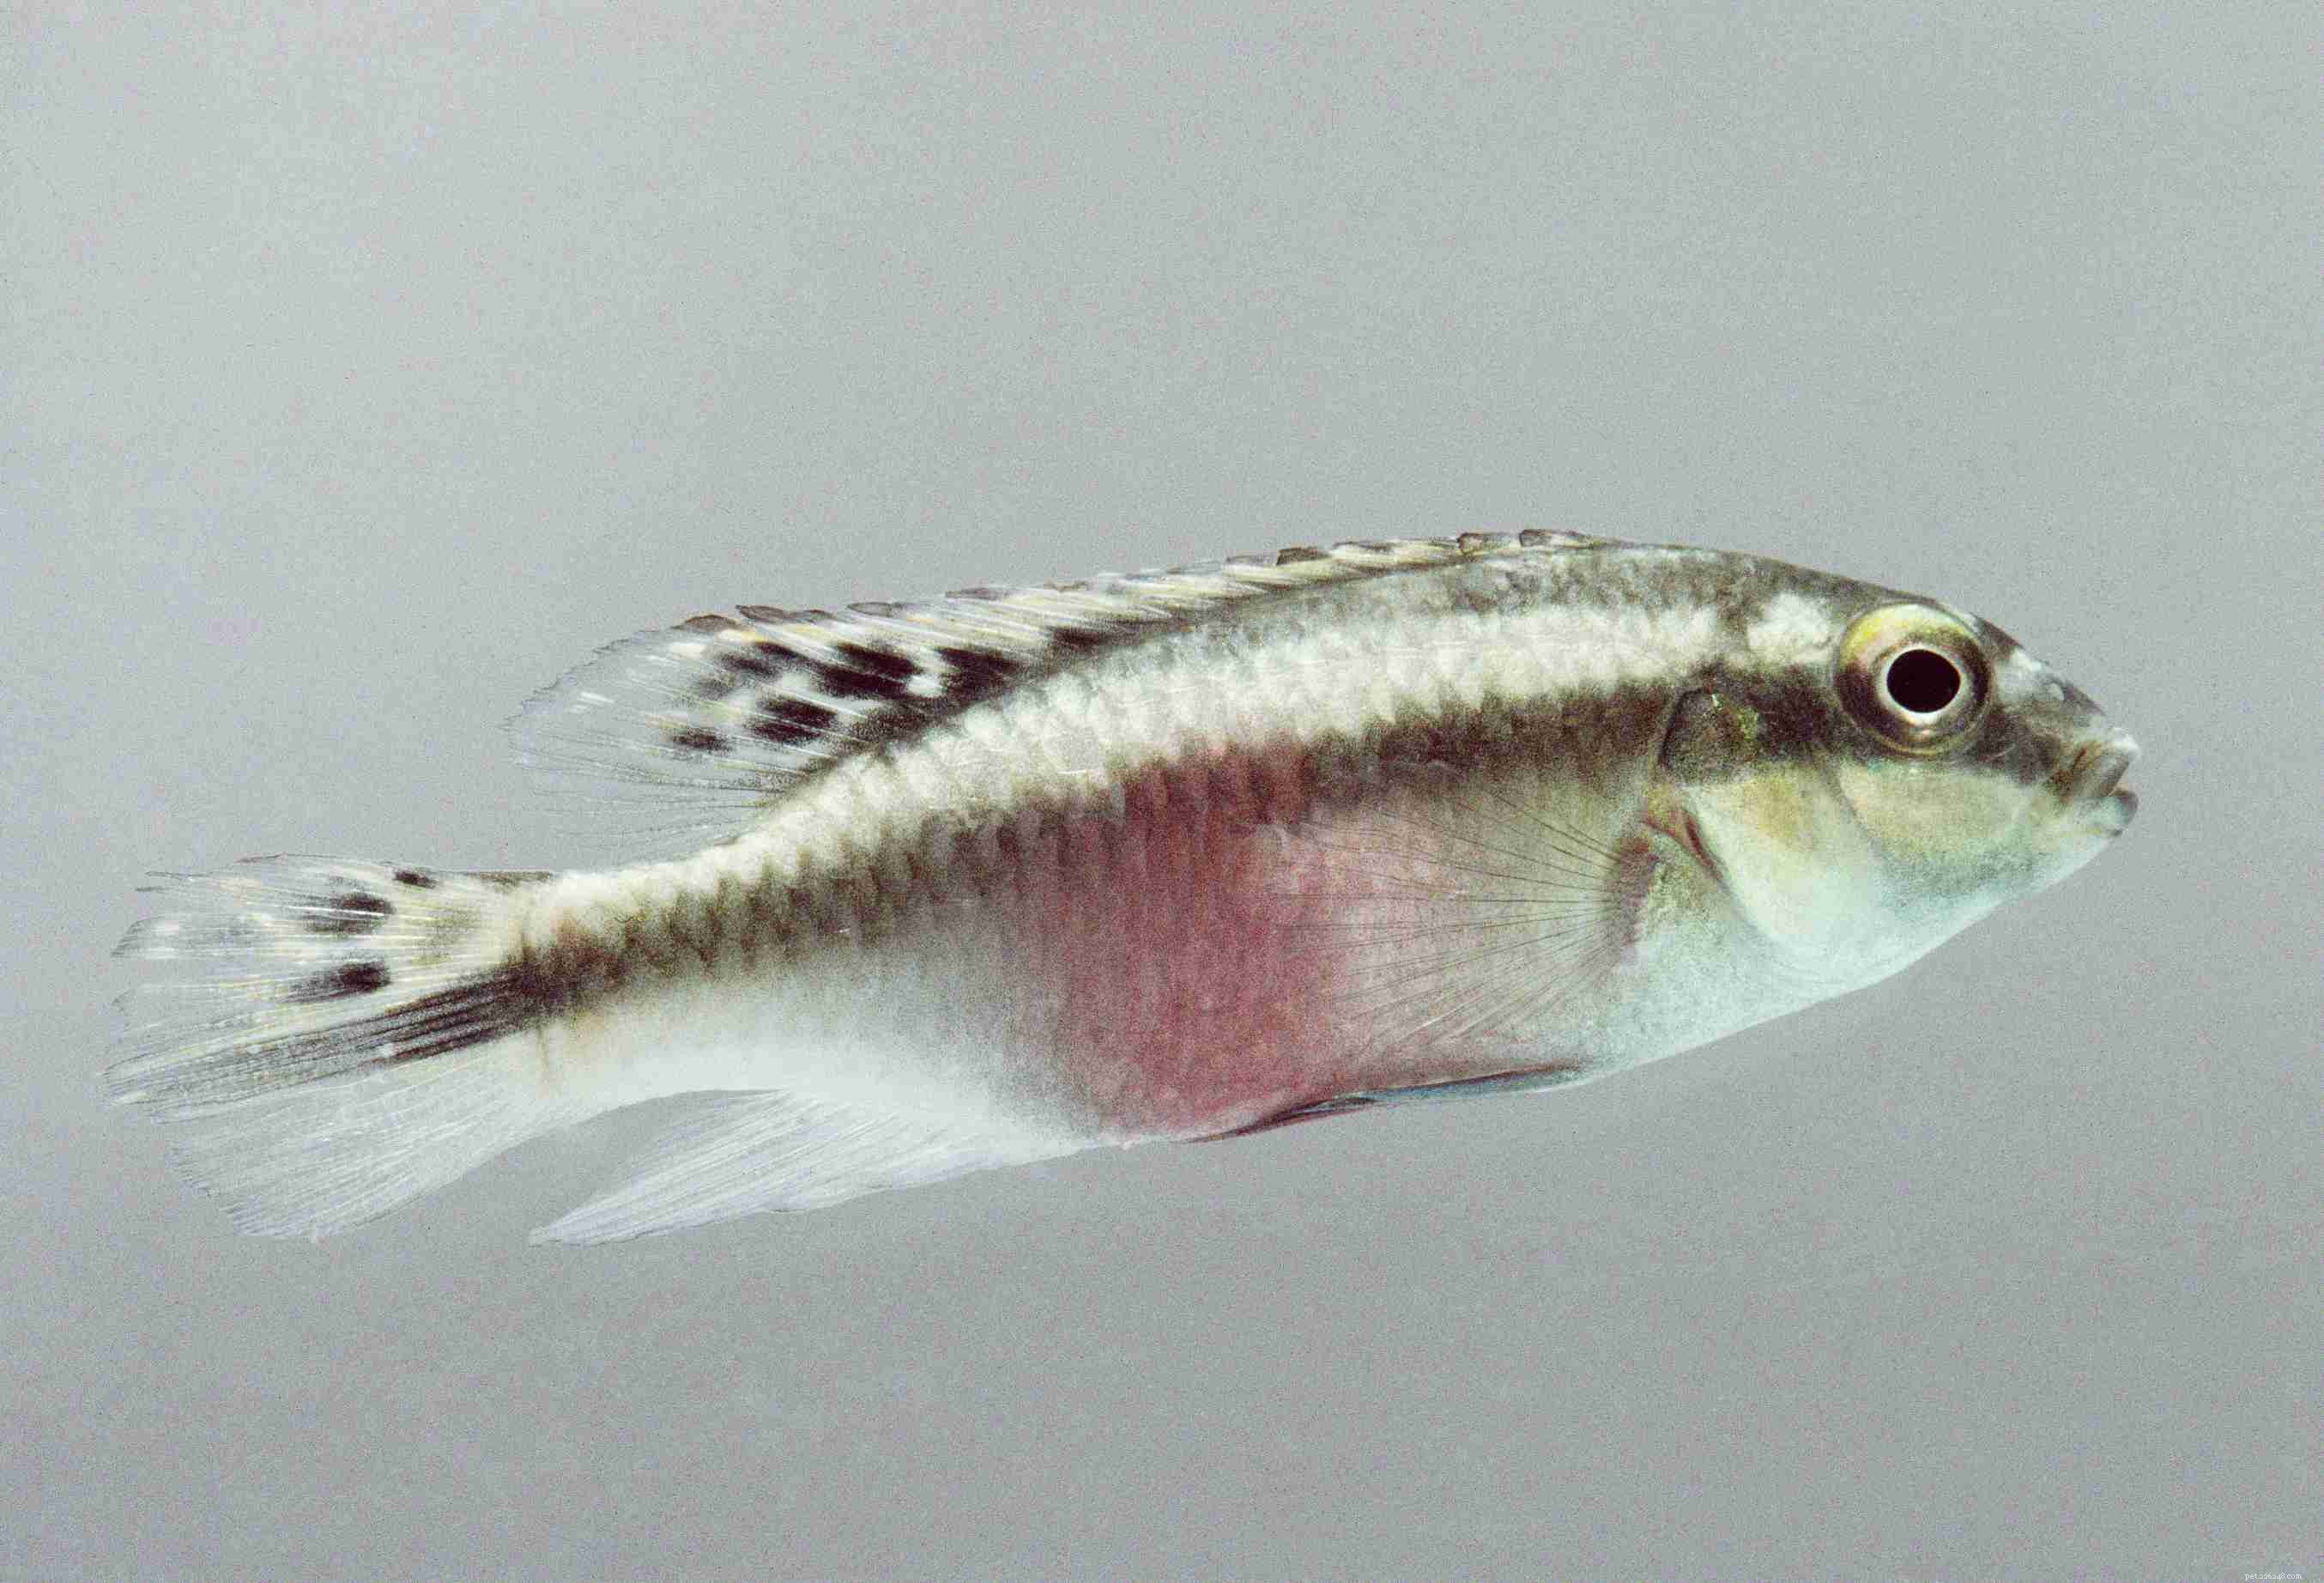 Полезный список видов аквариумных рыб по общему названию